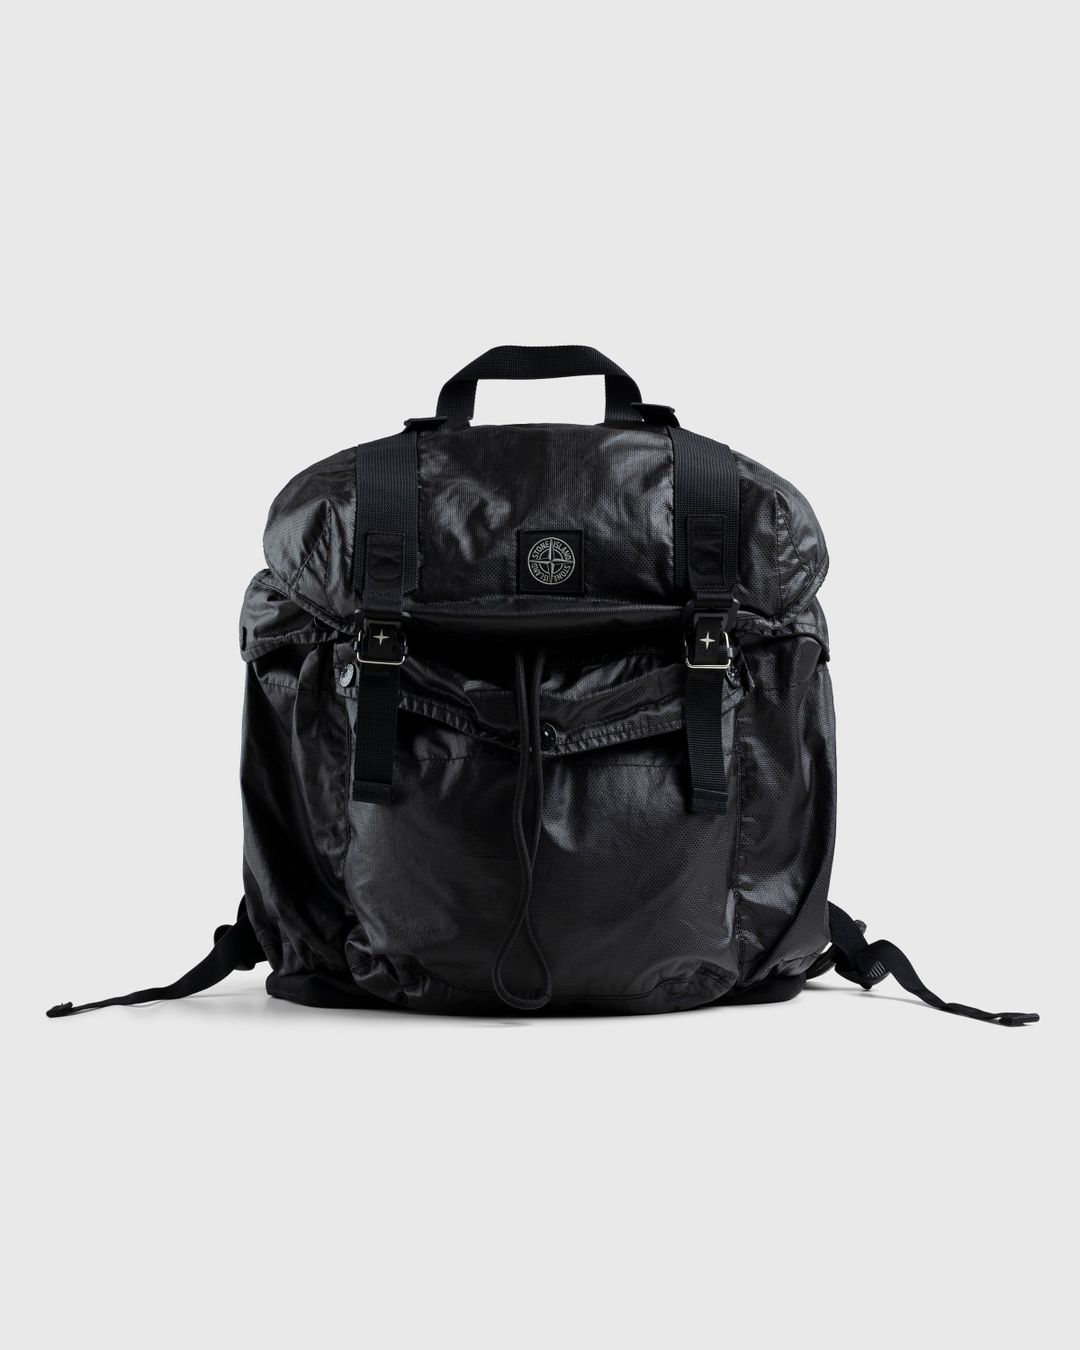 Stone Island – 90370 Dyed Backpack Black | Highsnobiety Shop